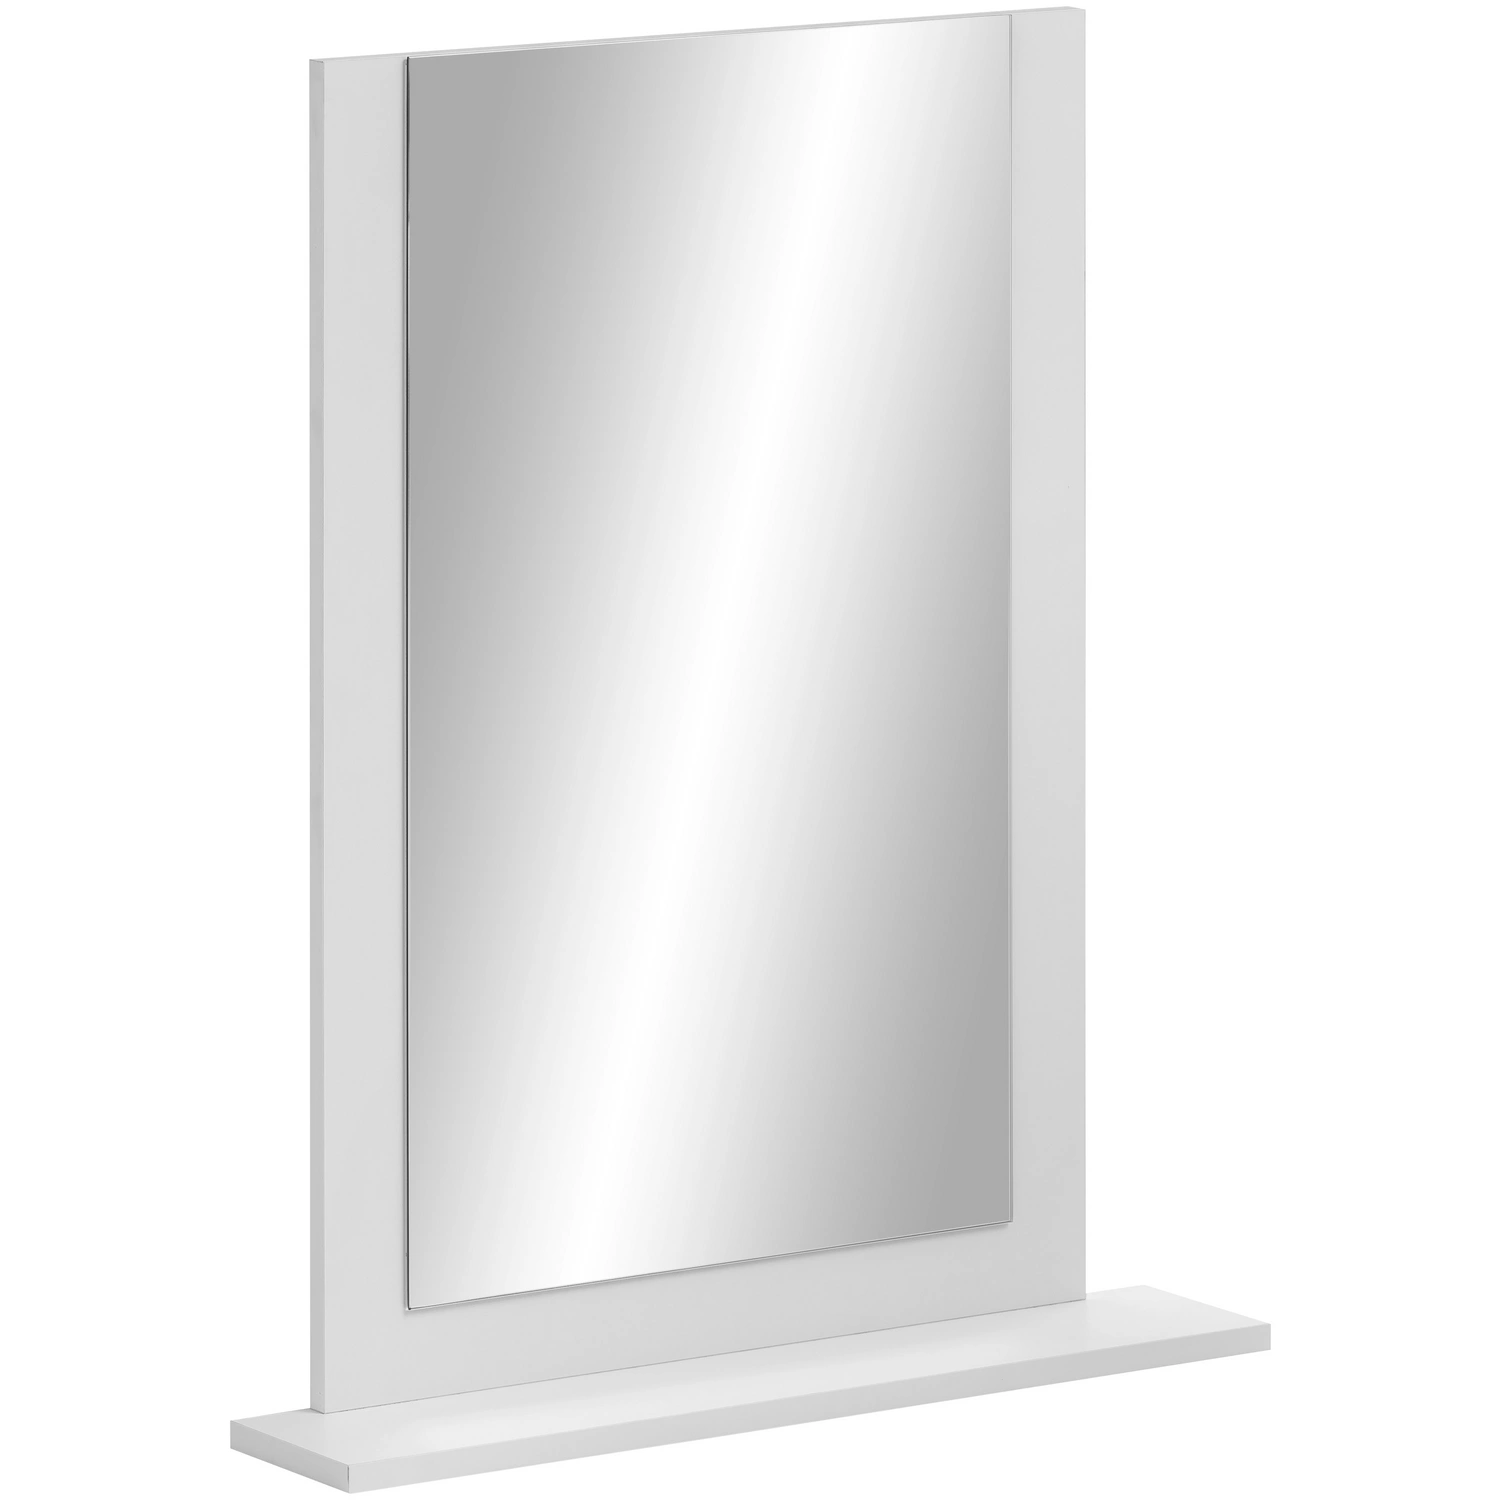 SCHILDMEYER Spiegel »Jonte«, rechteckig, BxH: 60 x 77,1 cm, kreideweiß